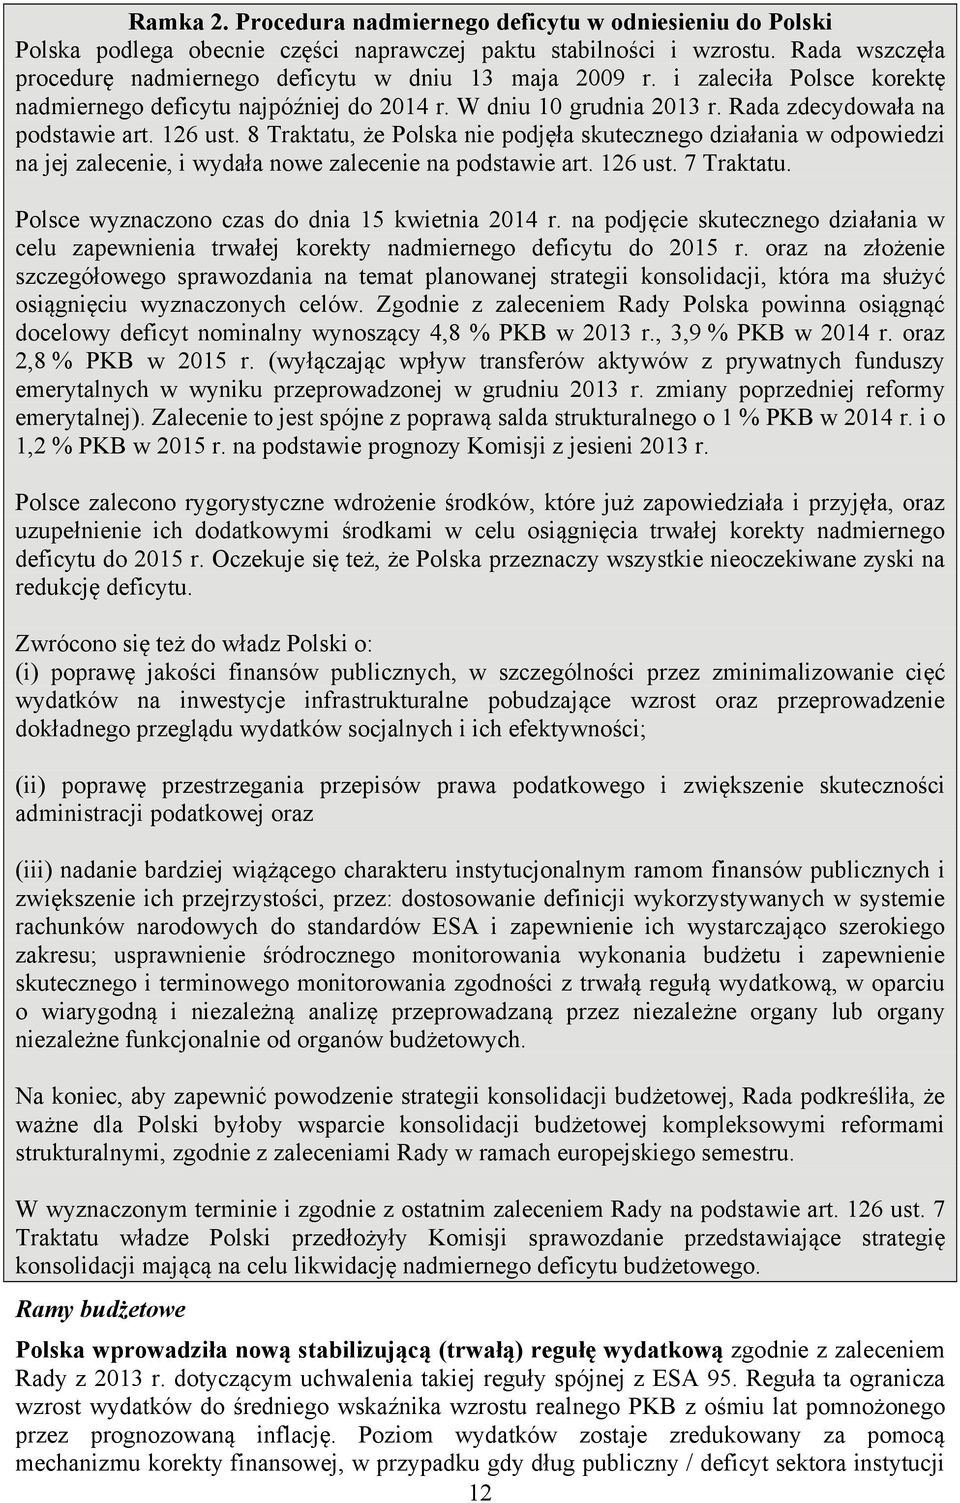 126 ust. 8 Traktatu, że Polska nie podjęła skutecznego działania w odpowiedzi na jej zalecenie, i wydała nowe zalecenie na podstawie art. 126 ust. 7 Traktatu.